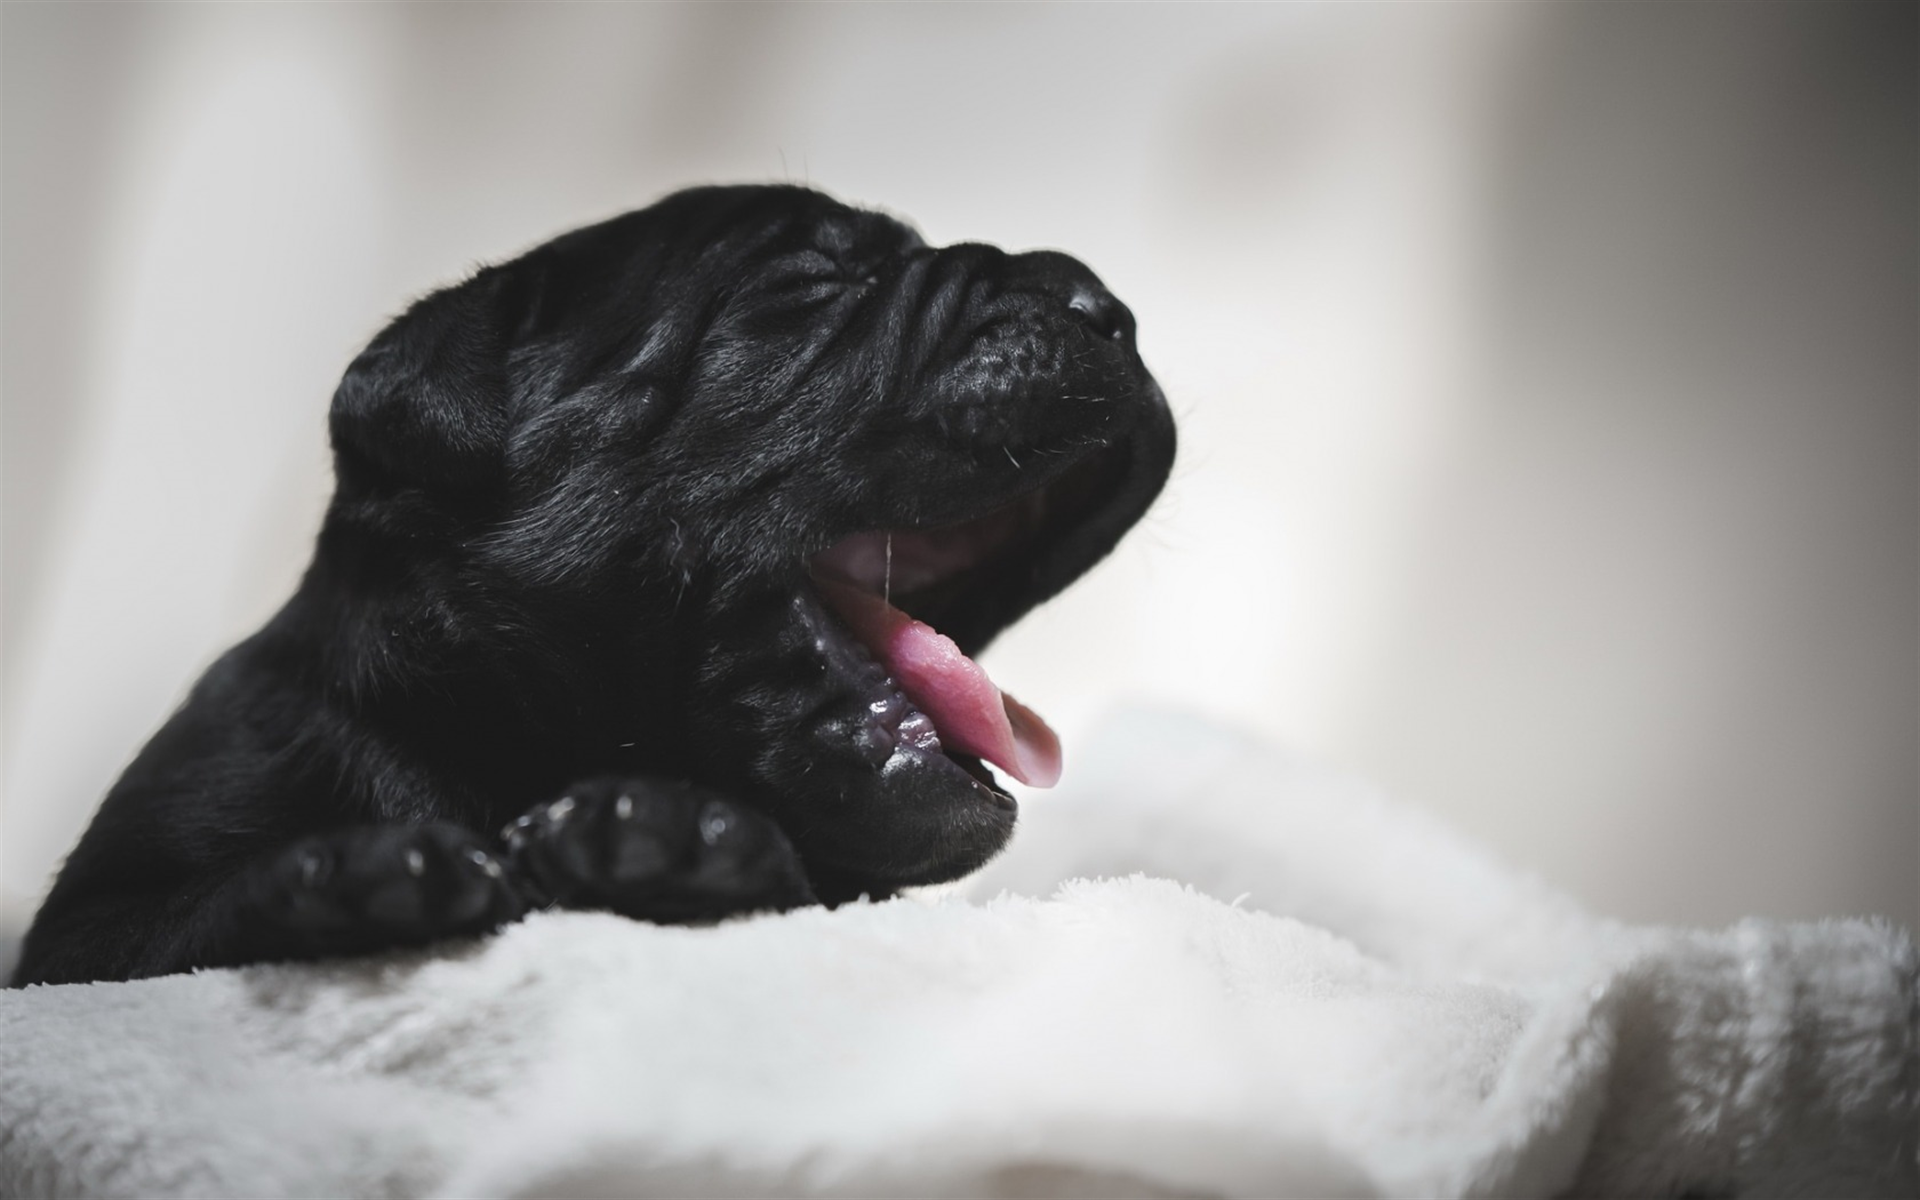 Cane Corso, Small Black Puppy, Pets, Black Dogs, Breeds - Fondos De Pantalla De Perritos Negros , HD Wallpaper & Backgrounds